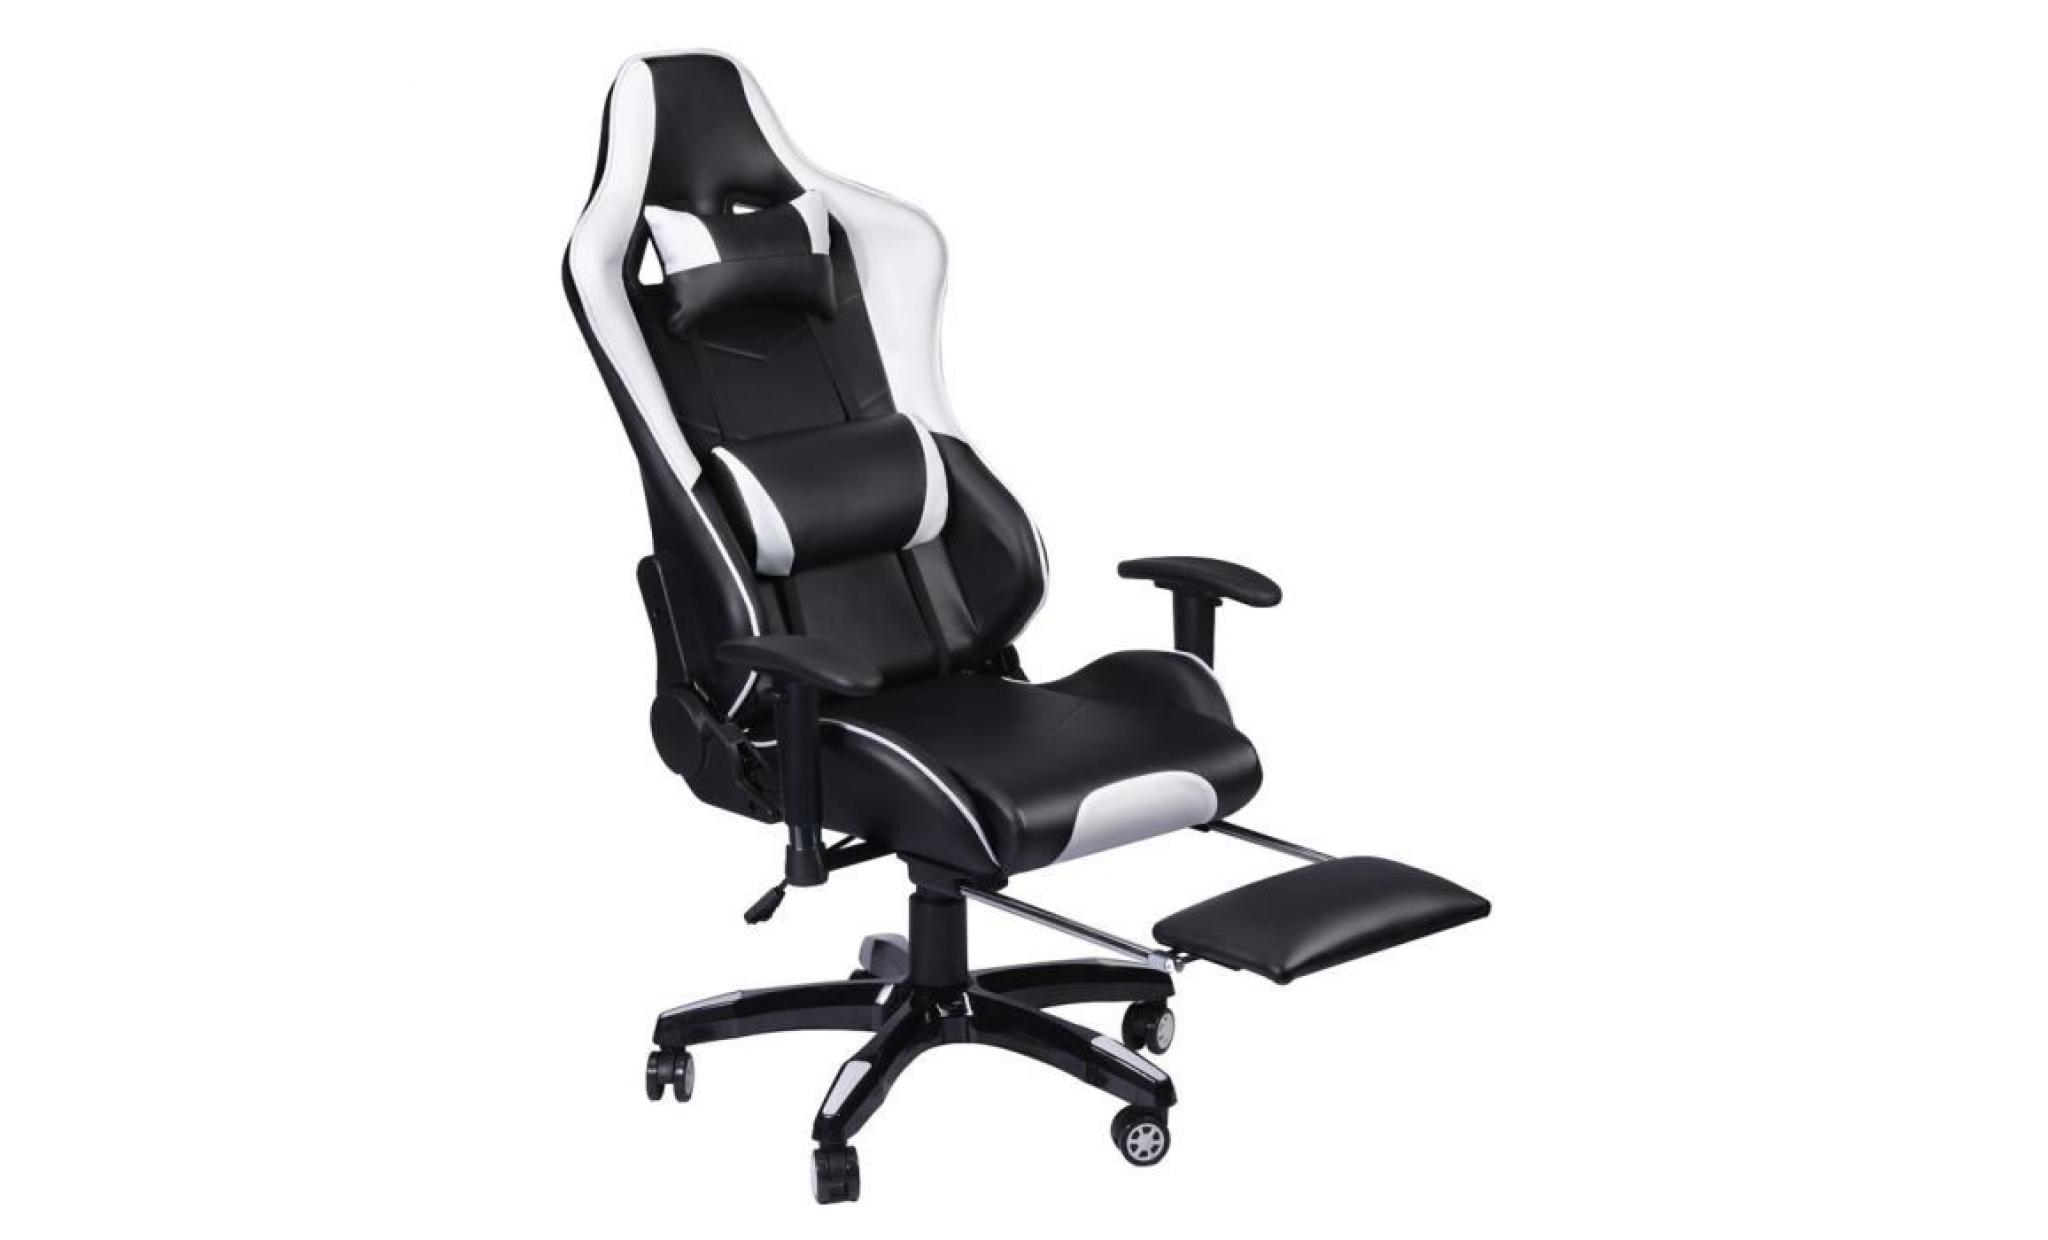 leshp® fauteuil gamer de bureau façon à hauteur réglable siège baquet rallye noir et blanc pas cher